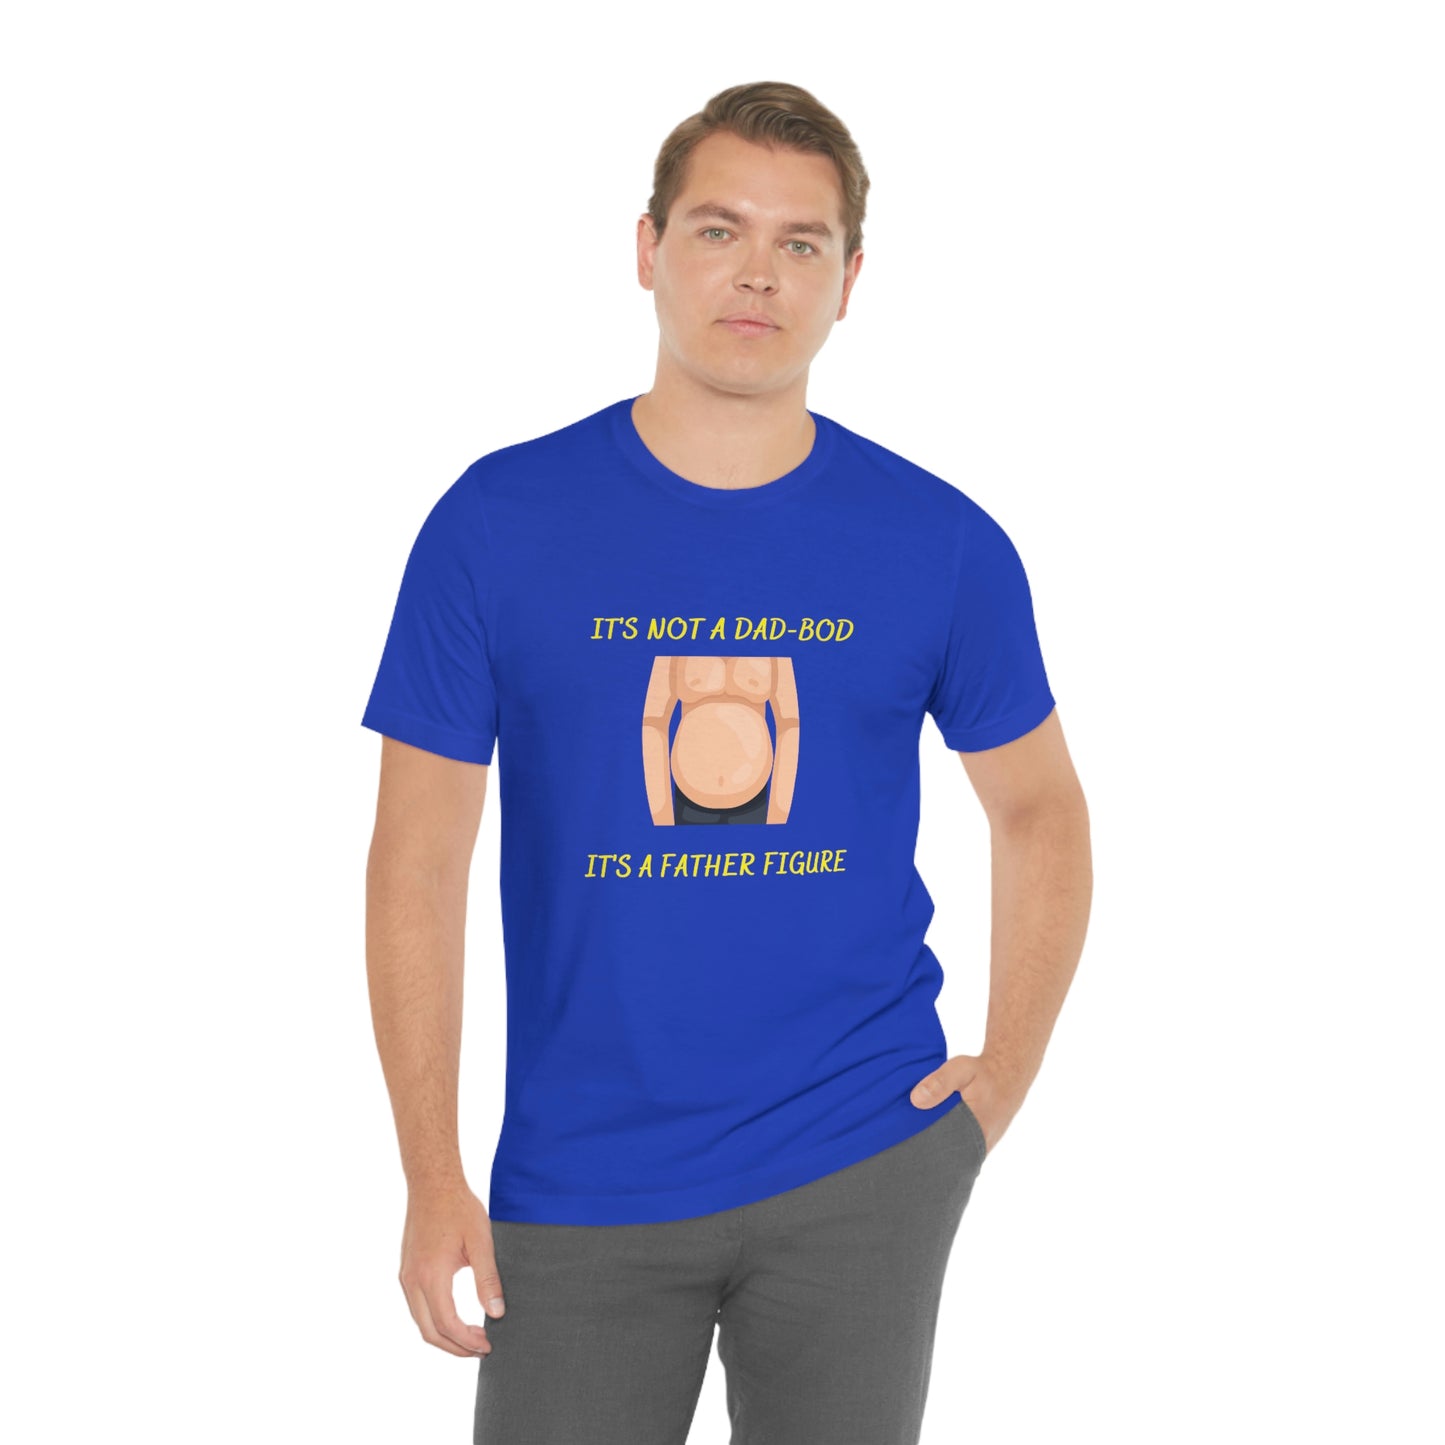 Not Dad Bod - Father Figure - Men's Jersey Short Sleeve T Shirt